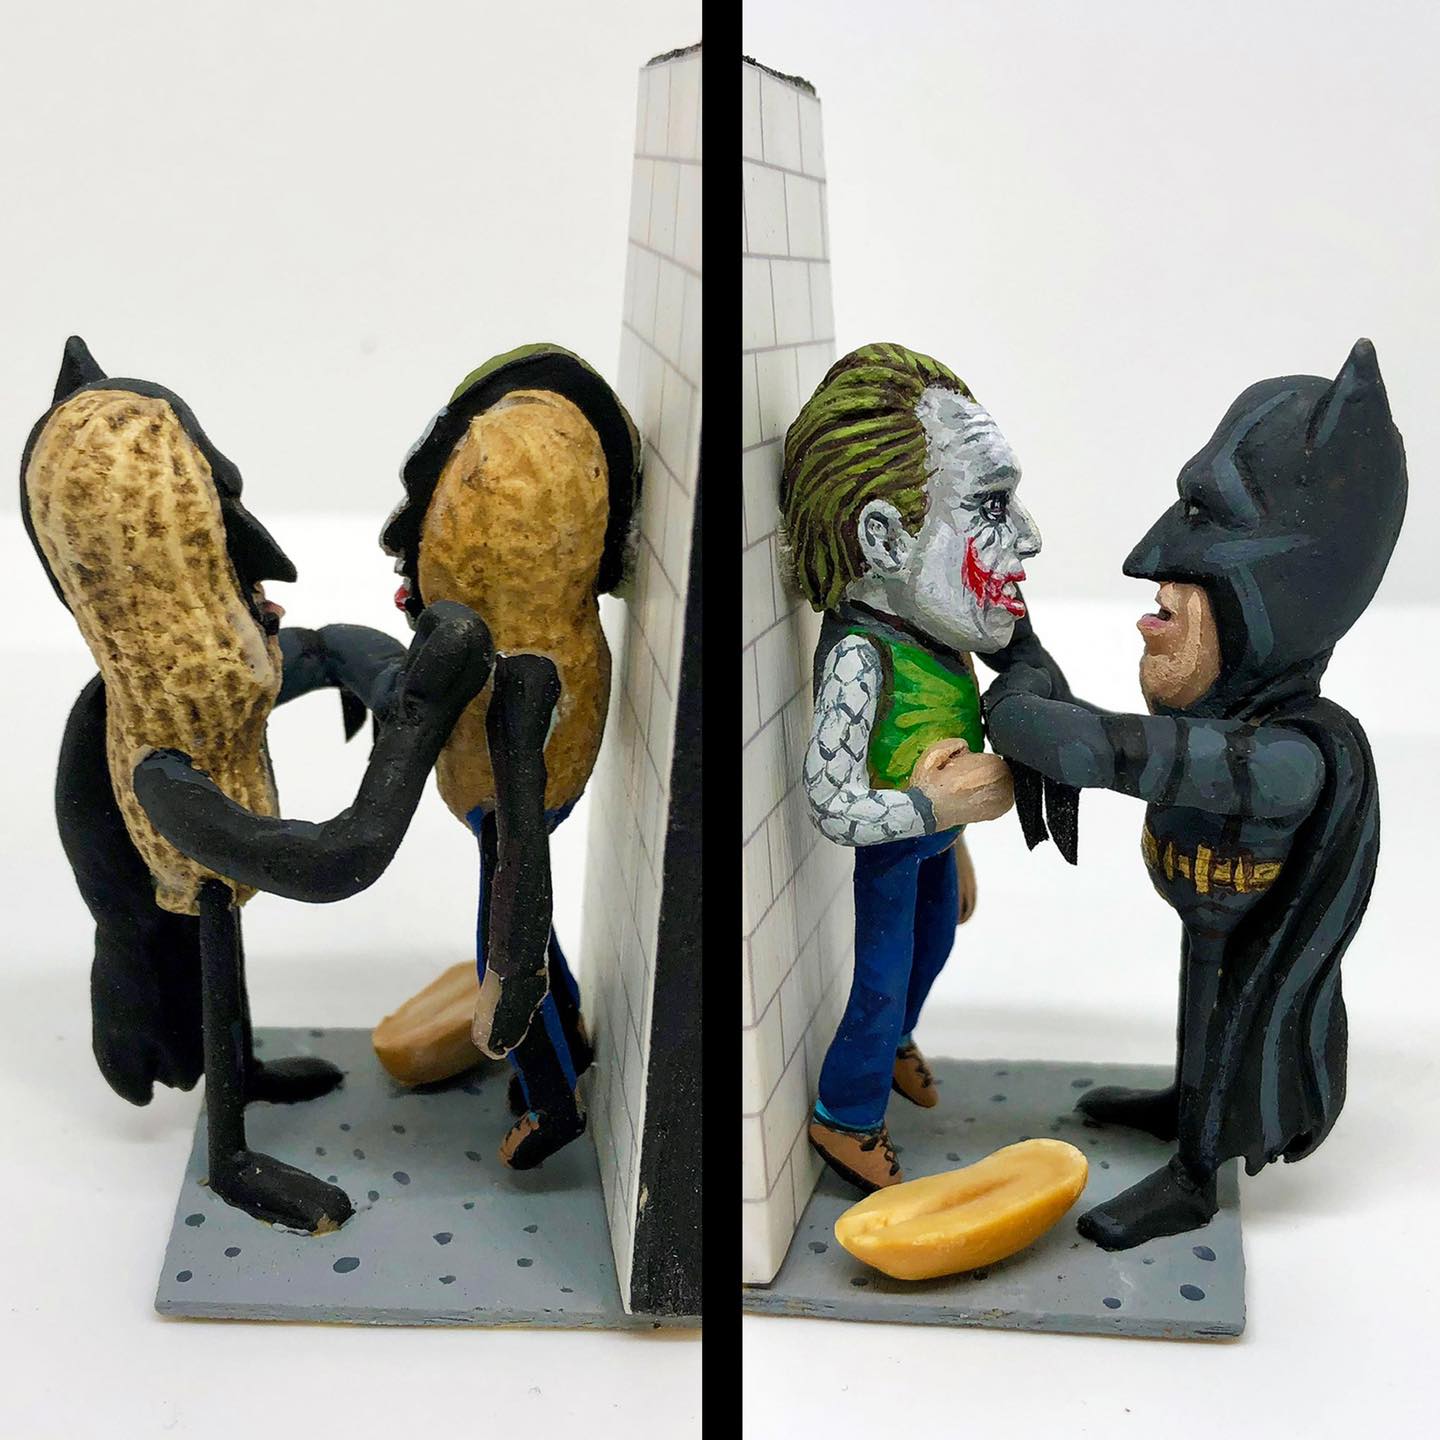 Joker and Batman as Peanuts